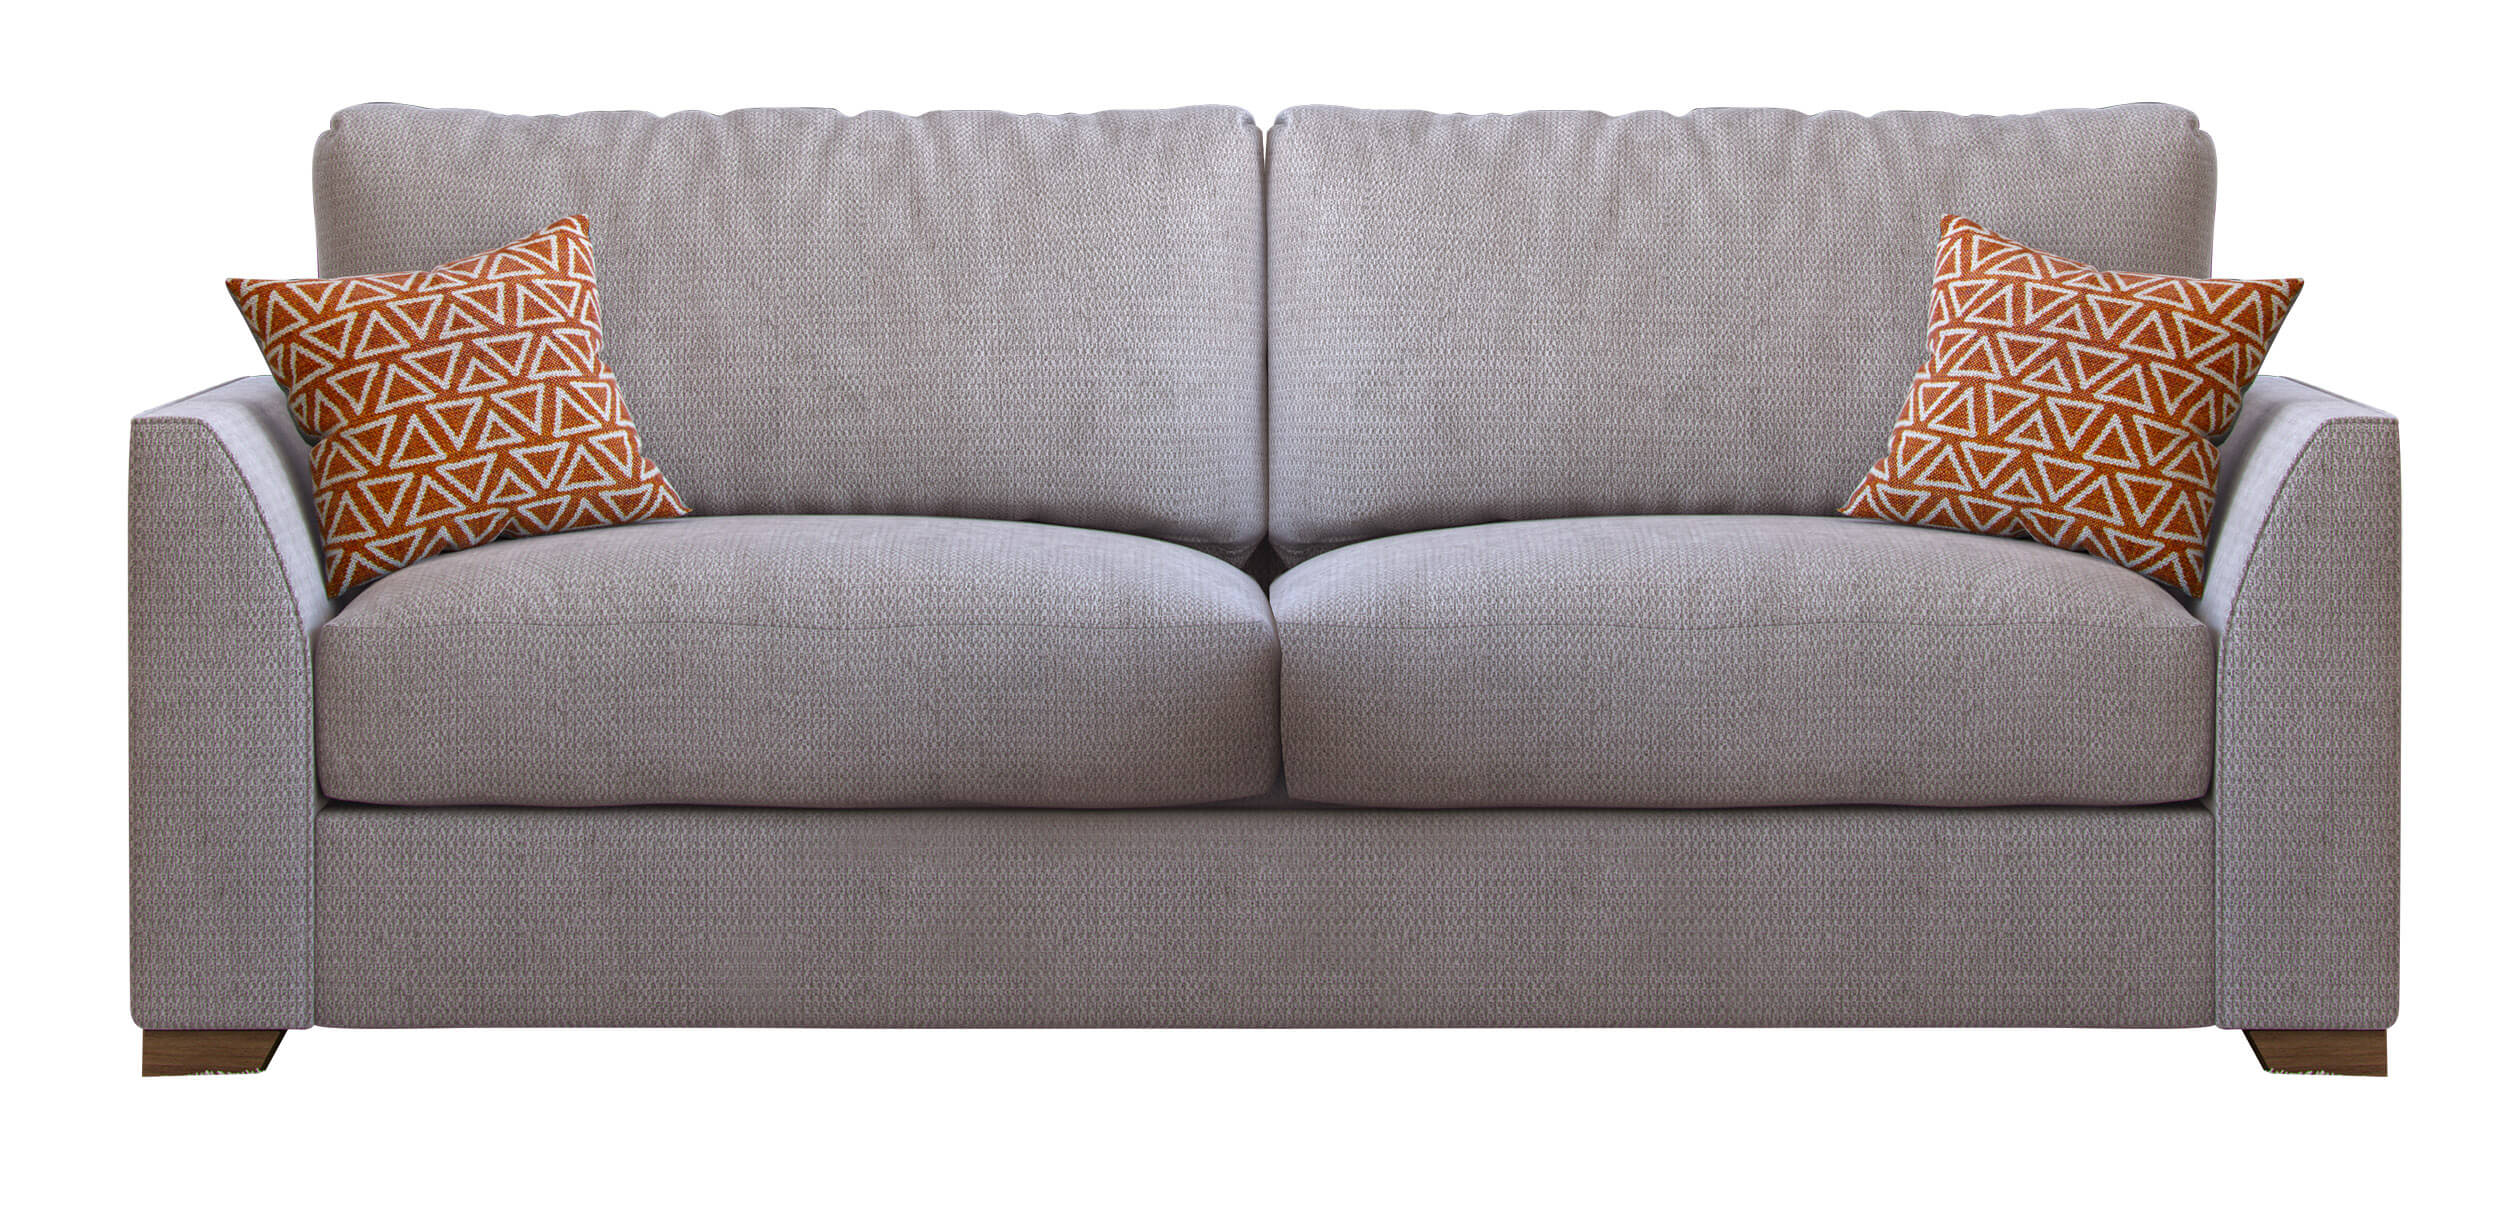 Showing image for Kalika 3-seater sofa